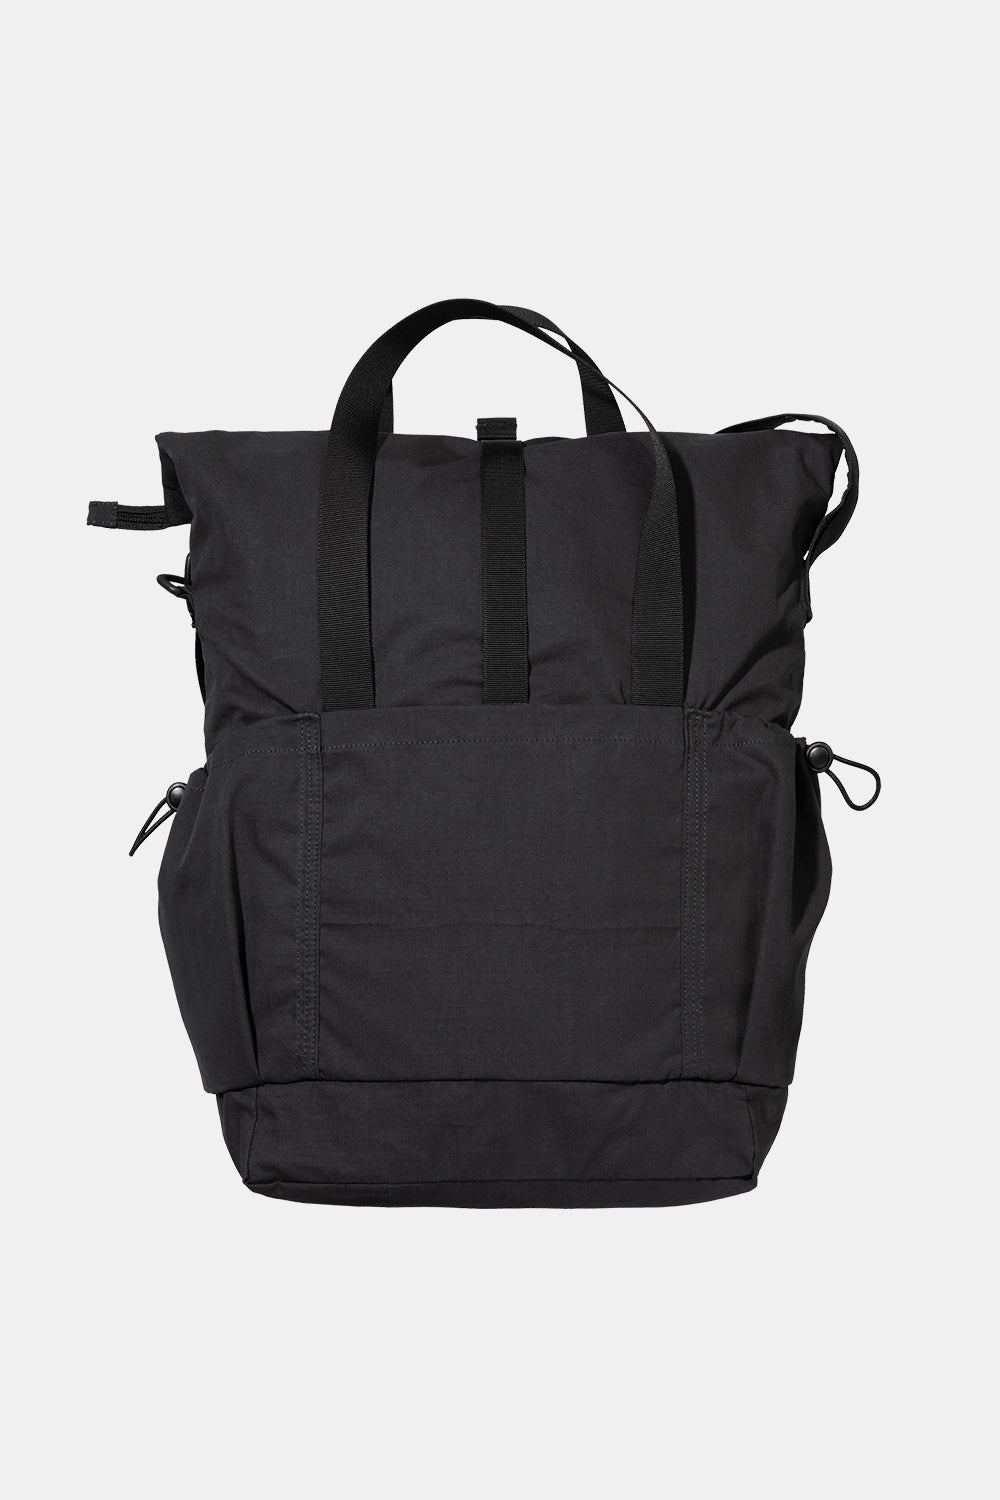 Carhartt WIP Haste Tote Bag (Black)